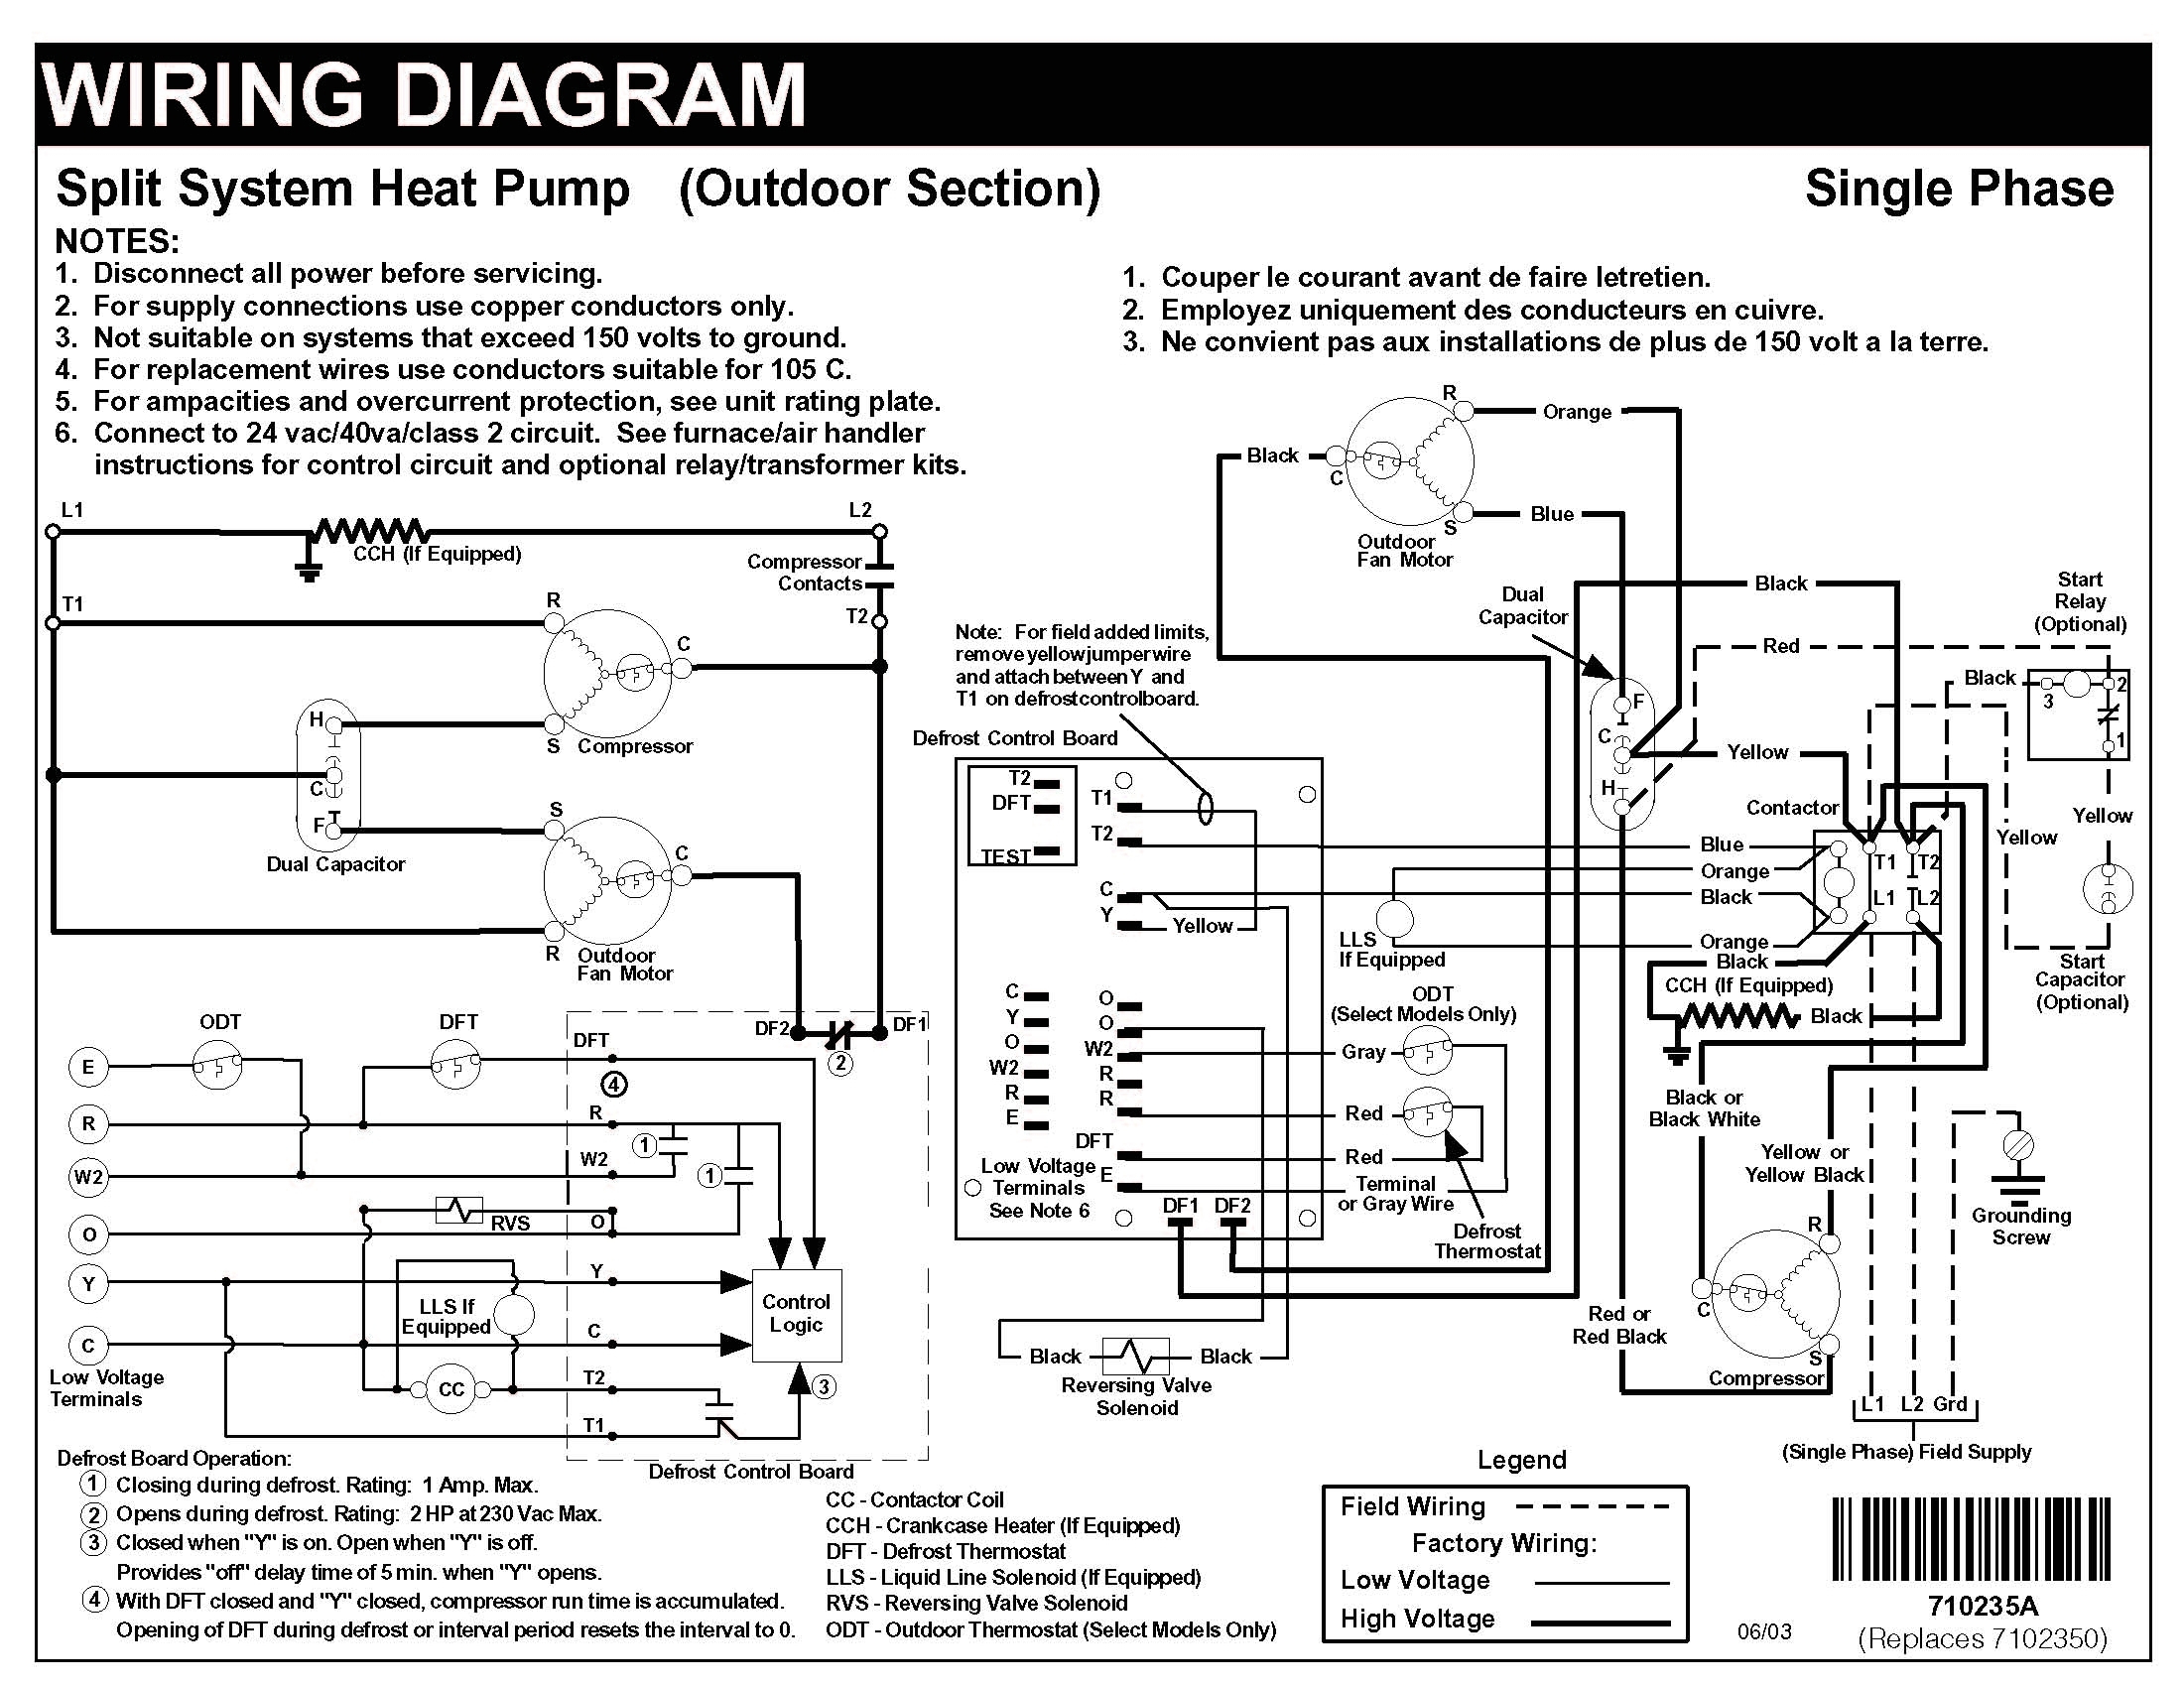 Heat Pump Wiring Schematic - Data Wiring Diagram Today - Heatpump Wiring Diagram